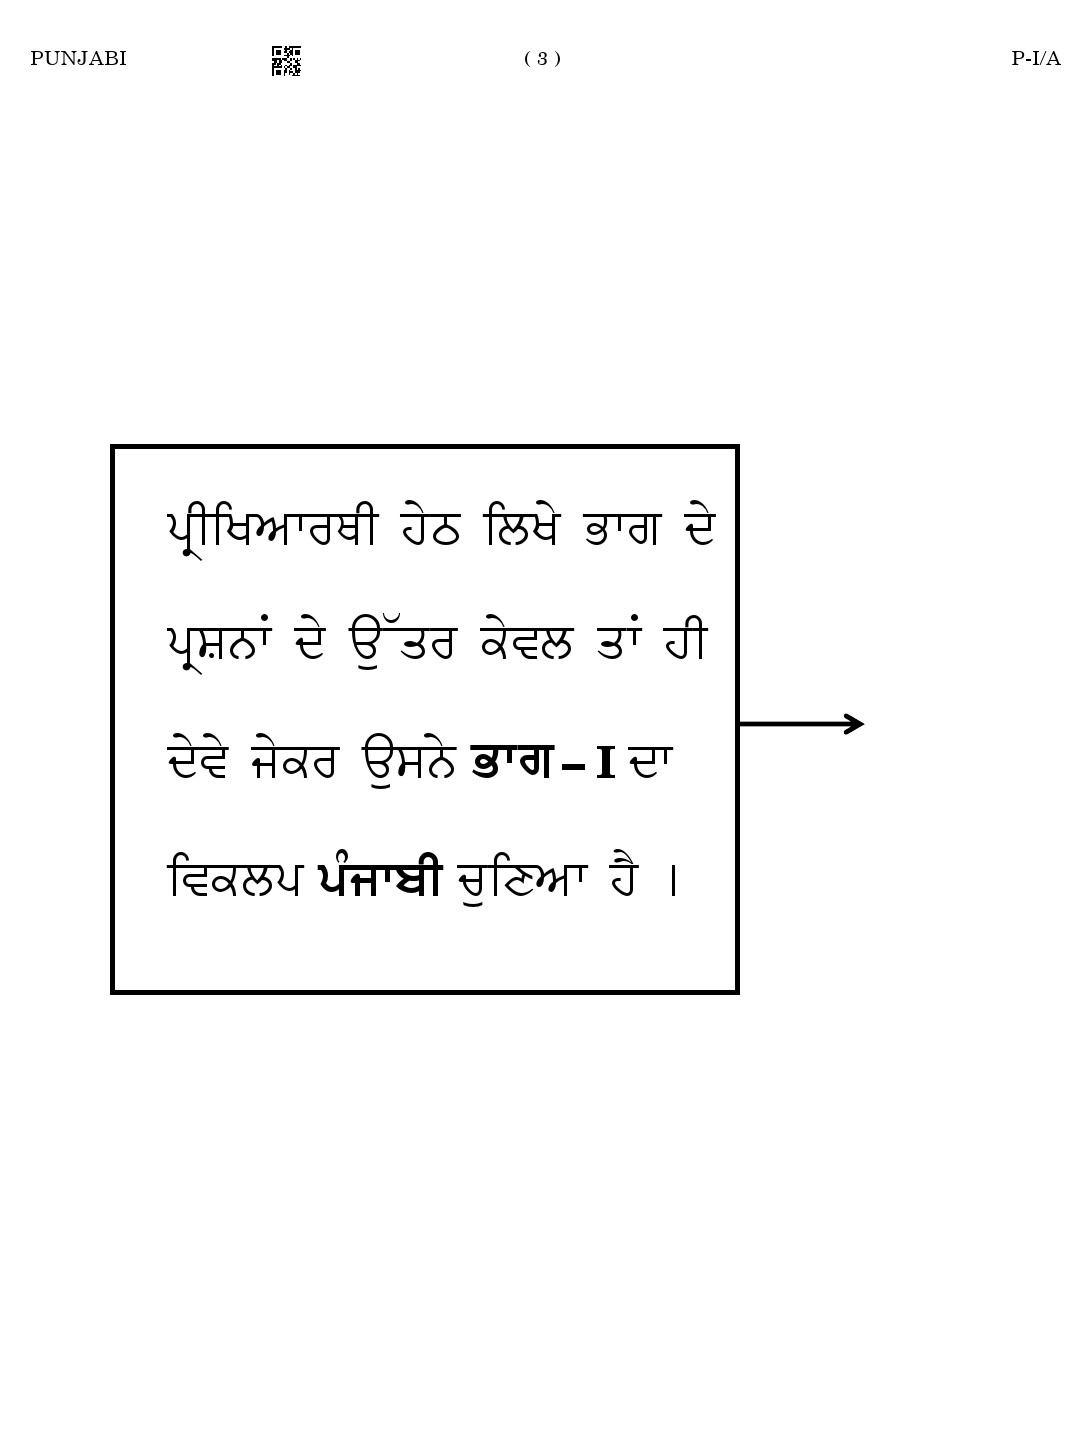 CTET August 2023 Punjabi Paper 1 Part IV and V 3